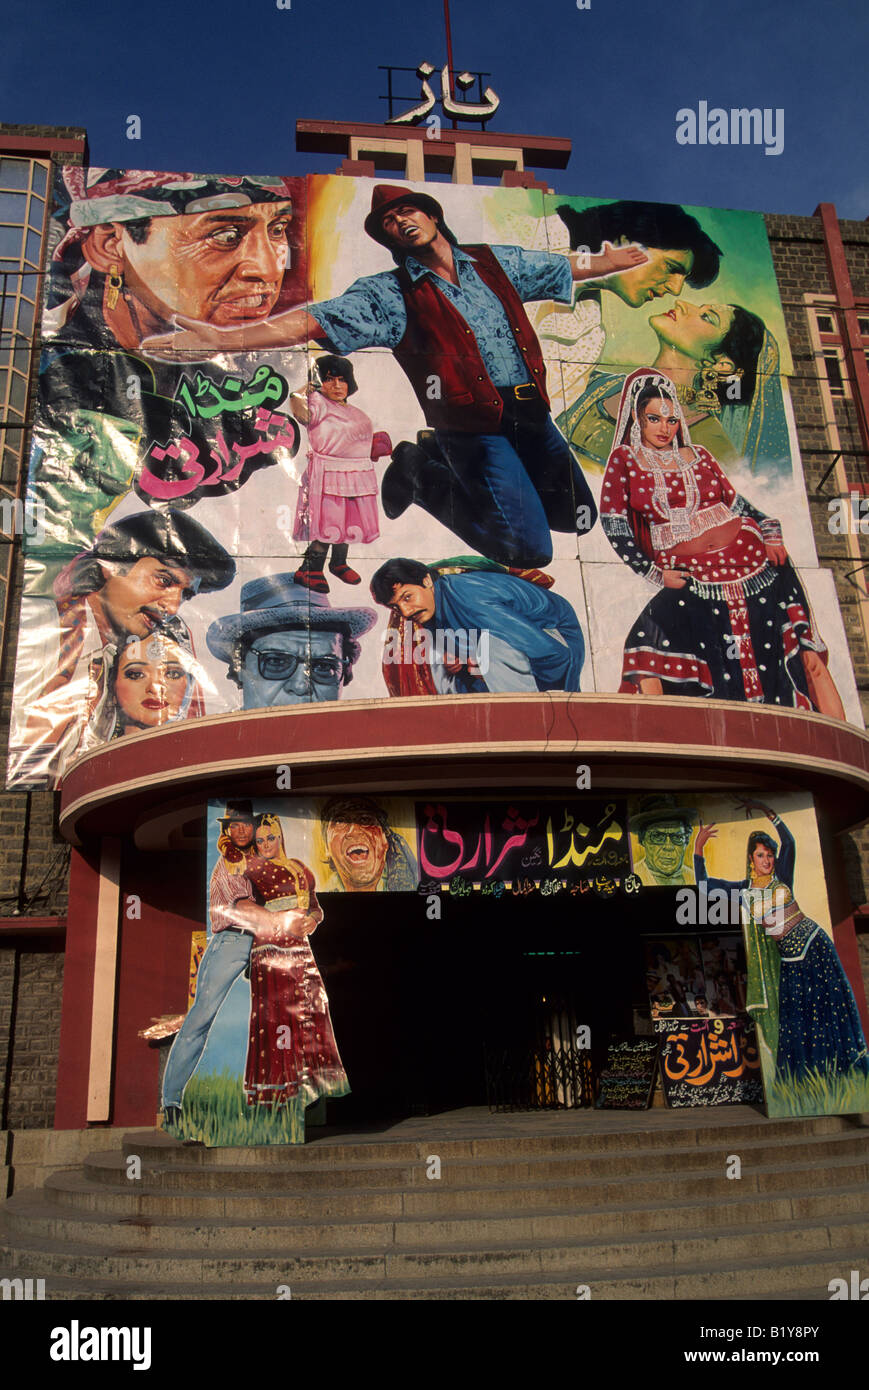 Une affiche de film coloré peint main affiche des illustrations de c est jeté au-dessus de l'entrée d'une salle de cinéma Pakistan Rawalpindi Banque D'Images